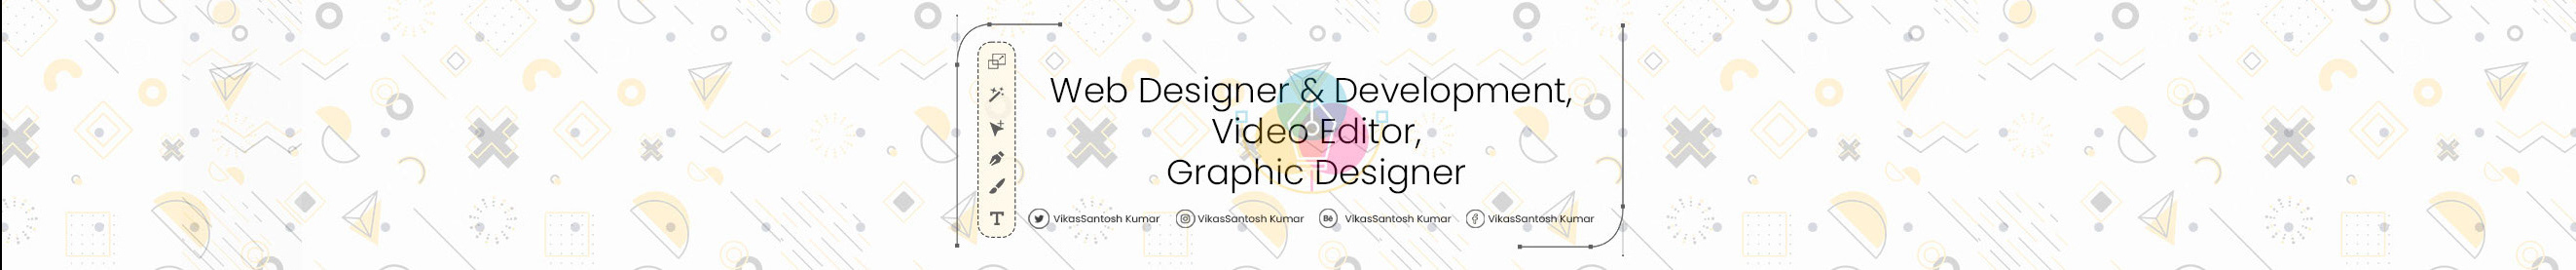 Profil-Banner von Vikas Kumar